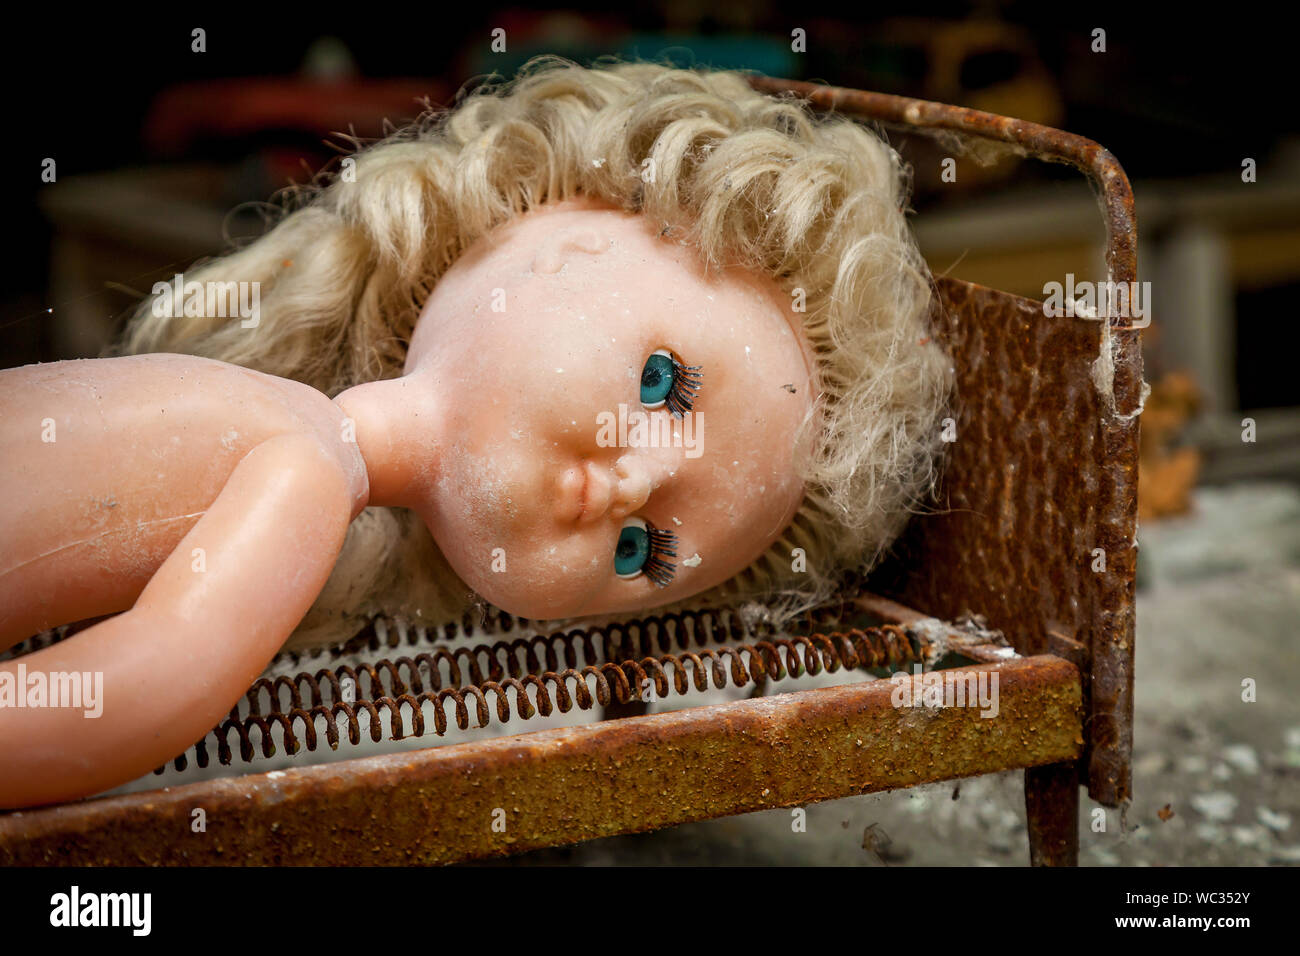 Eine Puppe in einem verlassenen Kindergarten Gebäude nach der Explosion des Pripyat Reaktor in Tschernobyl. Stockfoto